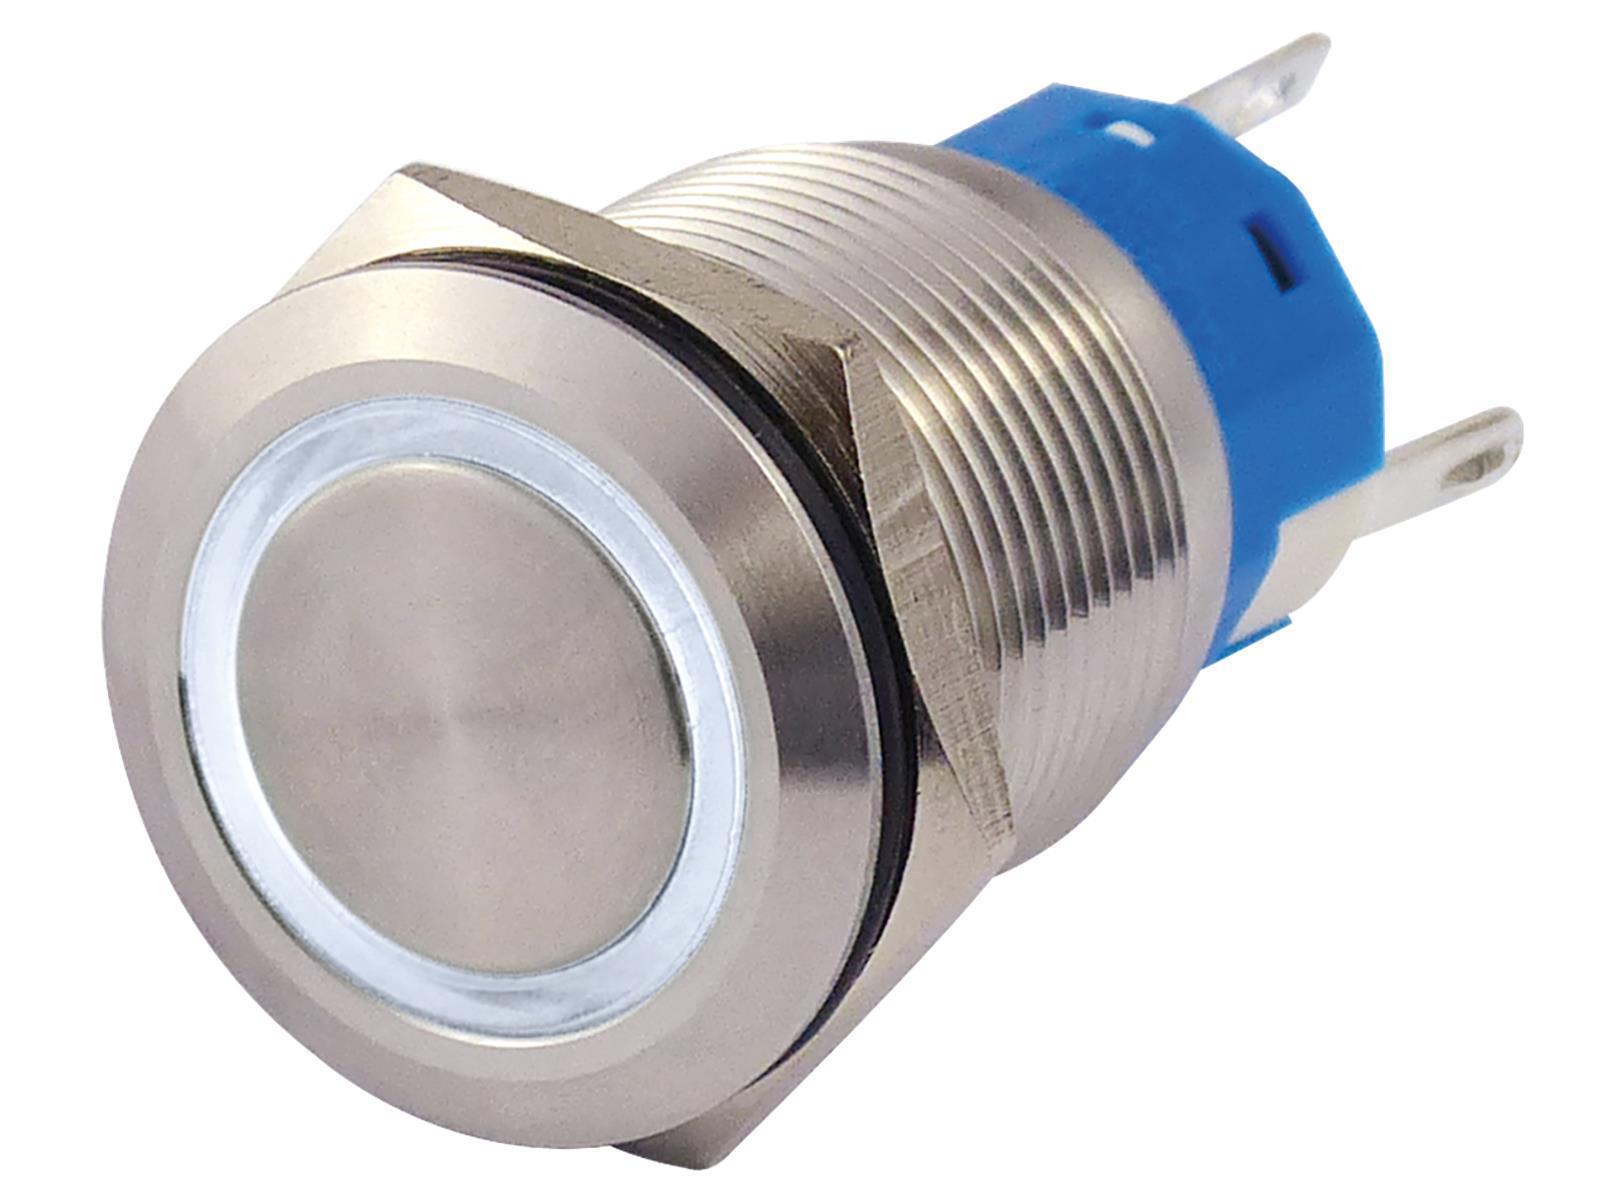 Vollmetallschalter mit Ringbeleuchtung, weiß, 19mm-Ø, 250V, 5A, Lötanschluss